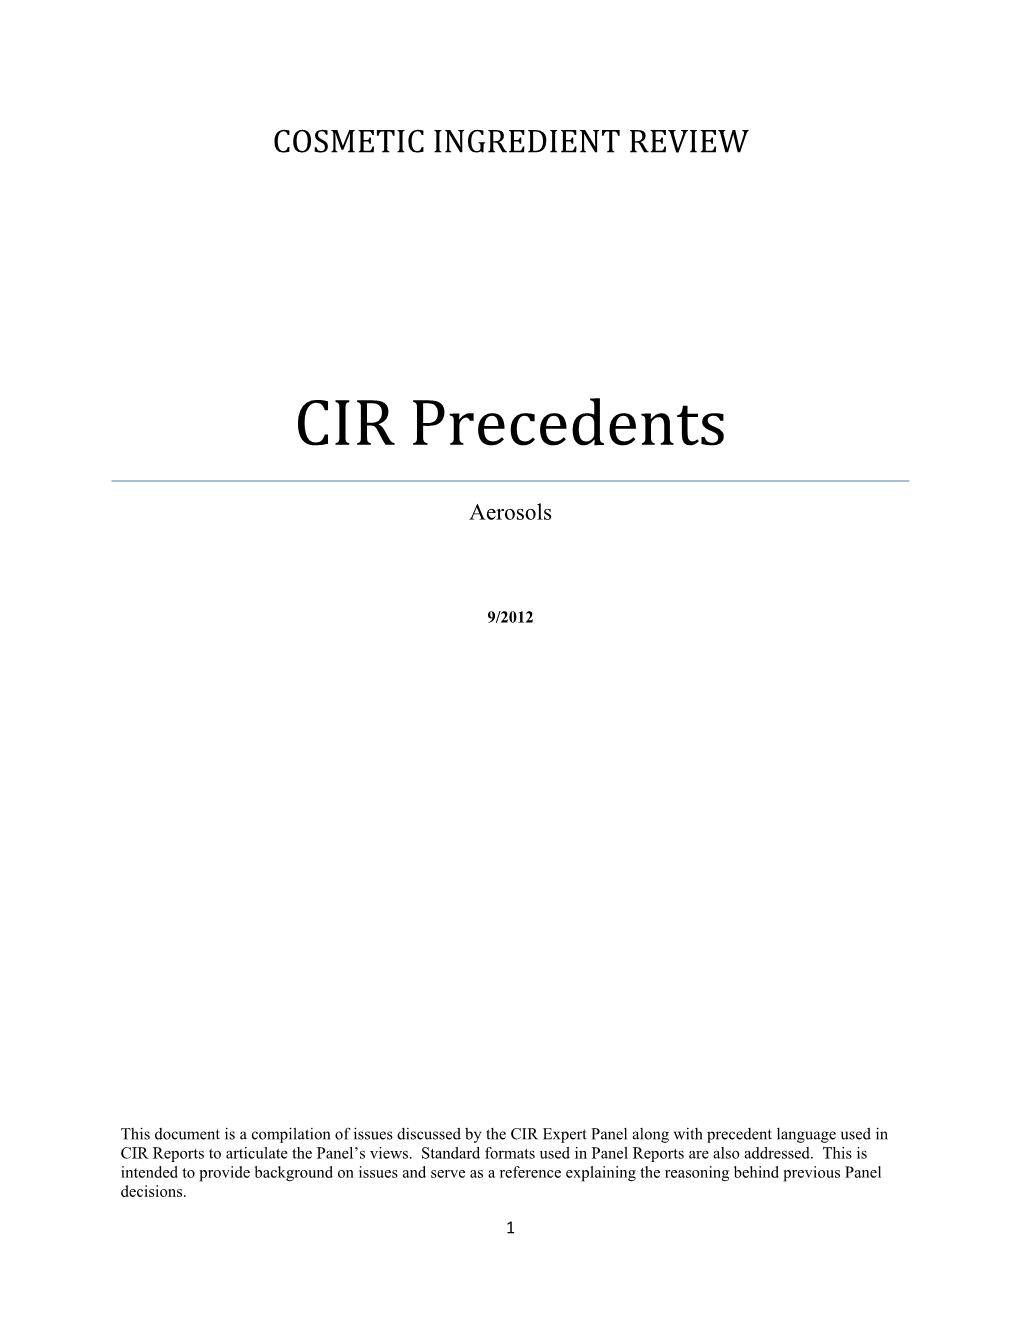 CIR Precedents